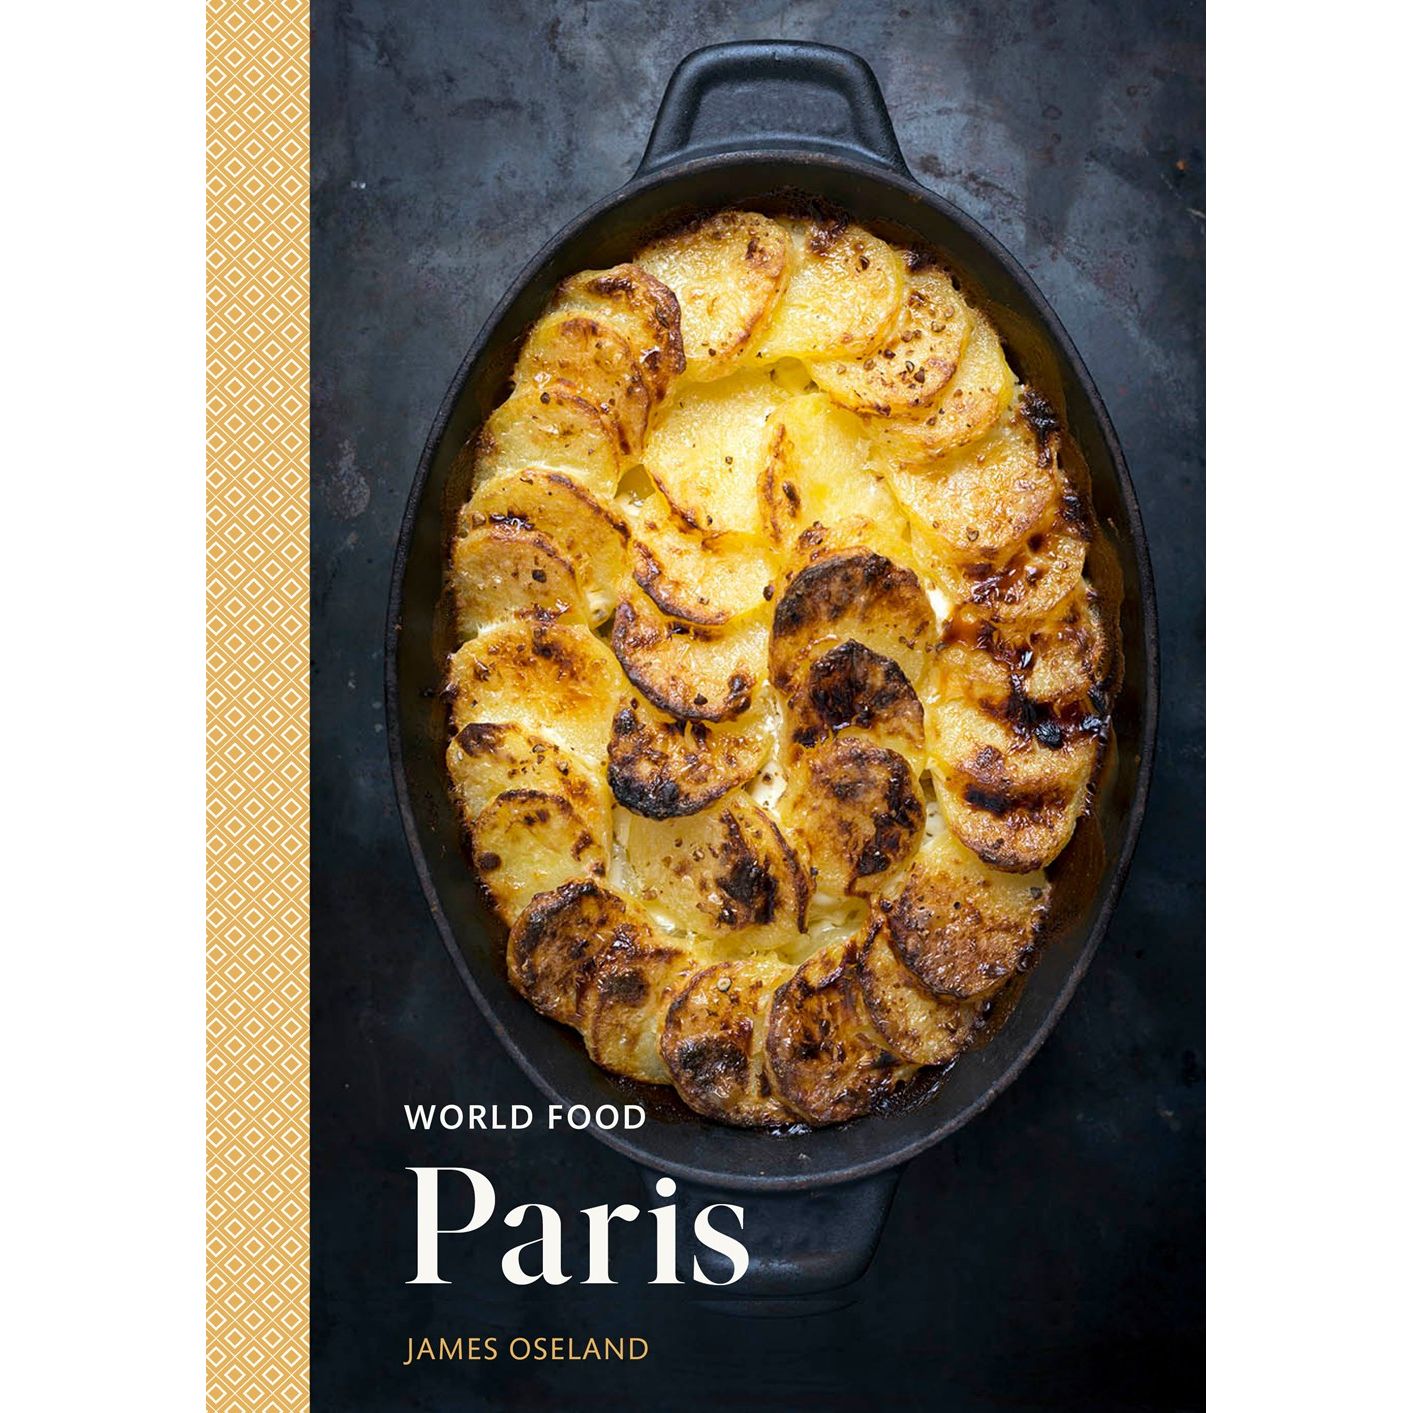 World Food Paris (James Oseland)